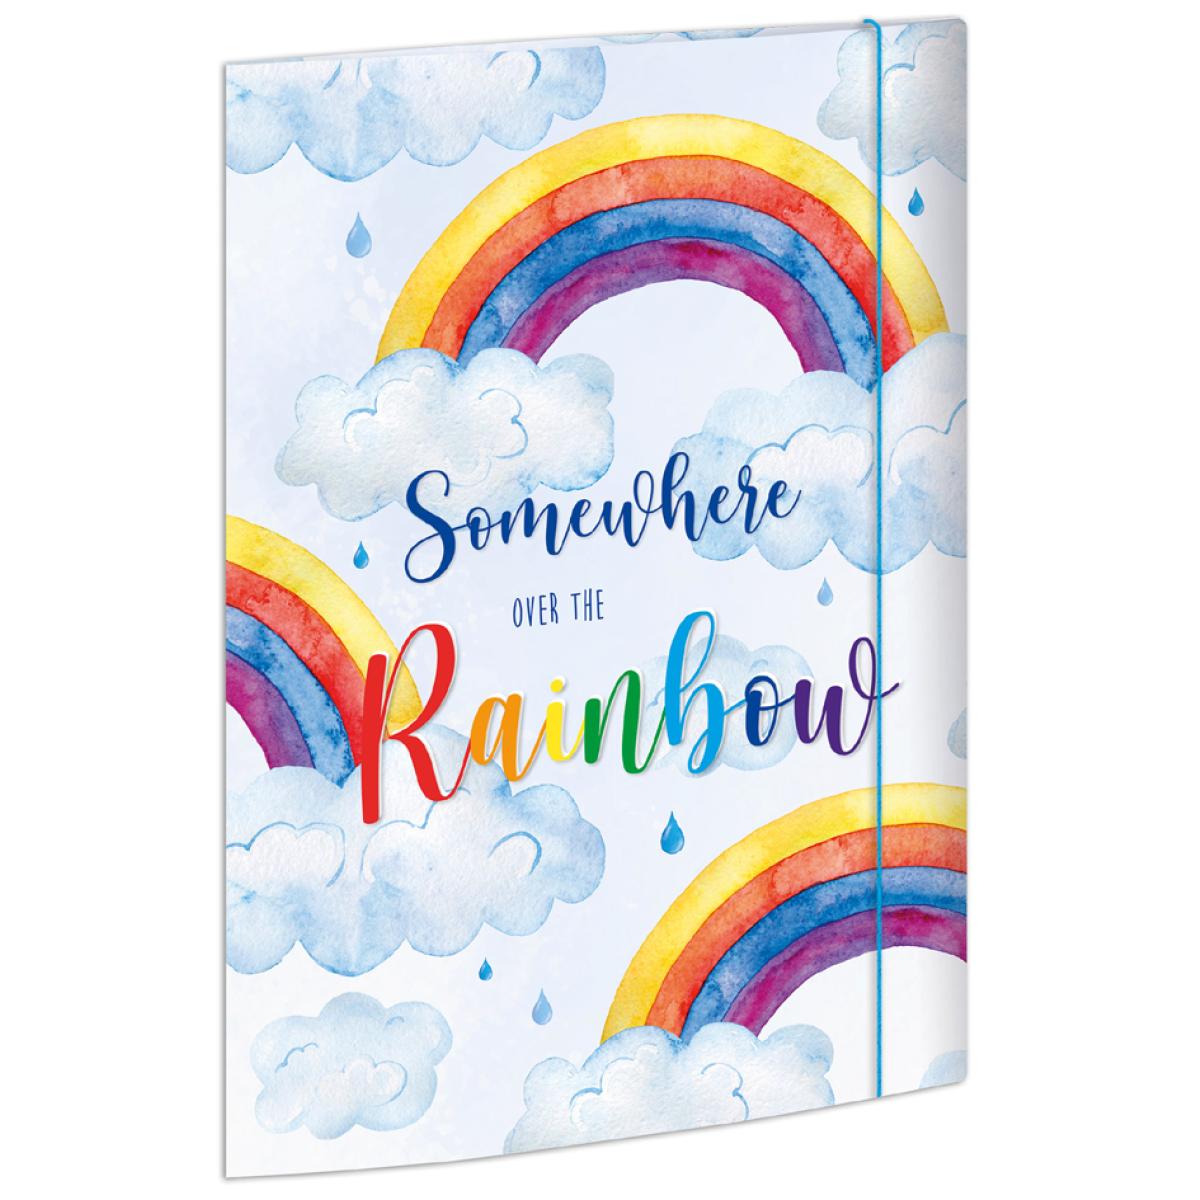 Zeichnungsmappe 'Over the Rainbow', DIN A4 RNK Verlag 46331 (4002871463317)